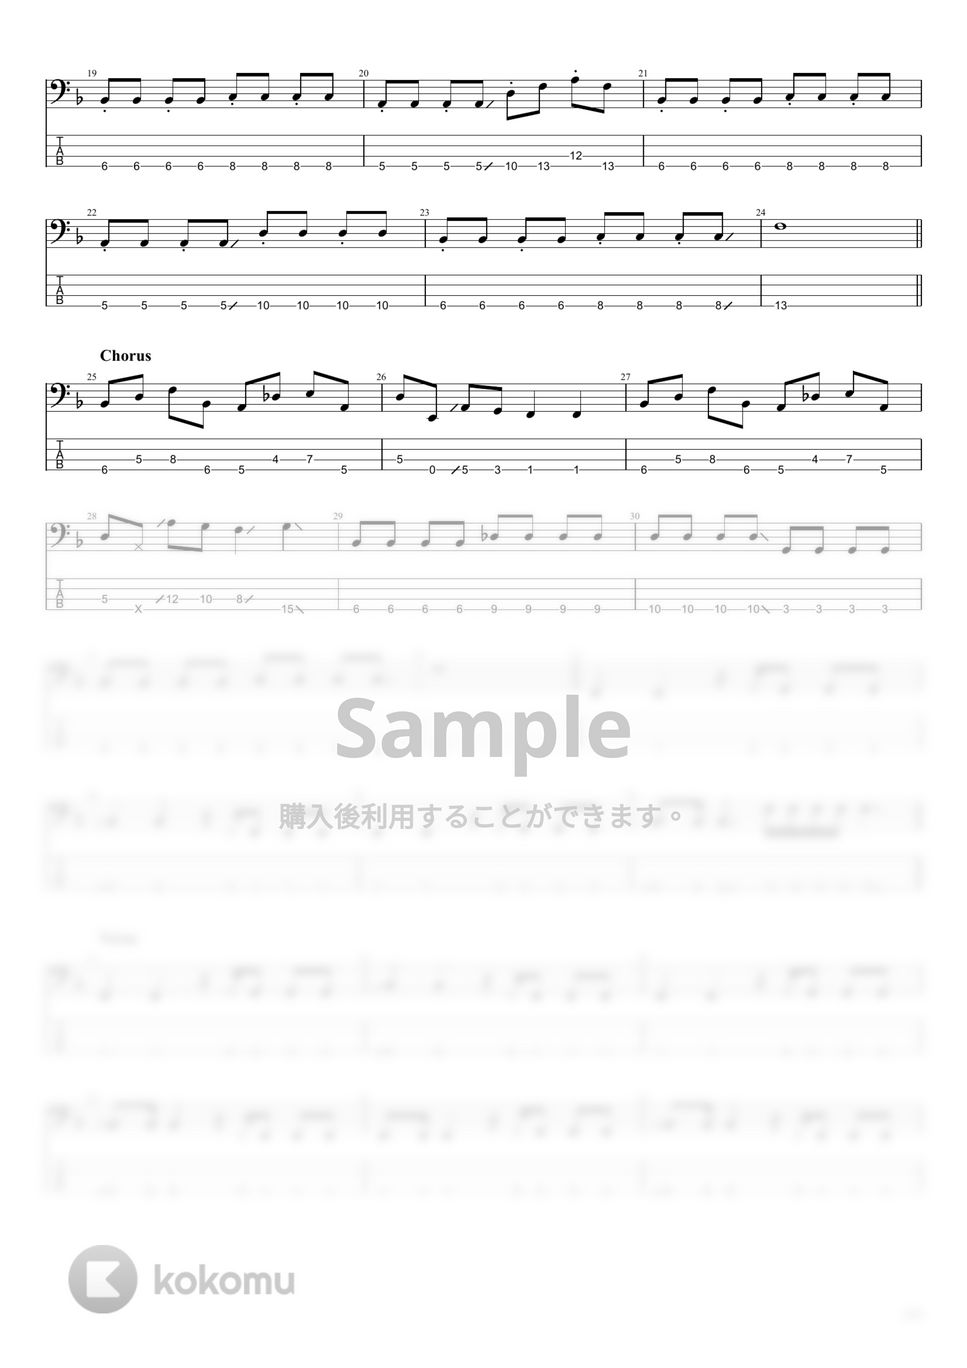 カネコアヤノ - カネコアヤノ楽譜集 (10曲) by まっきん